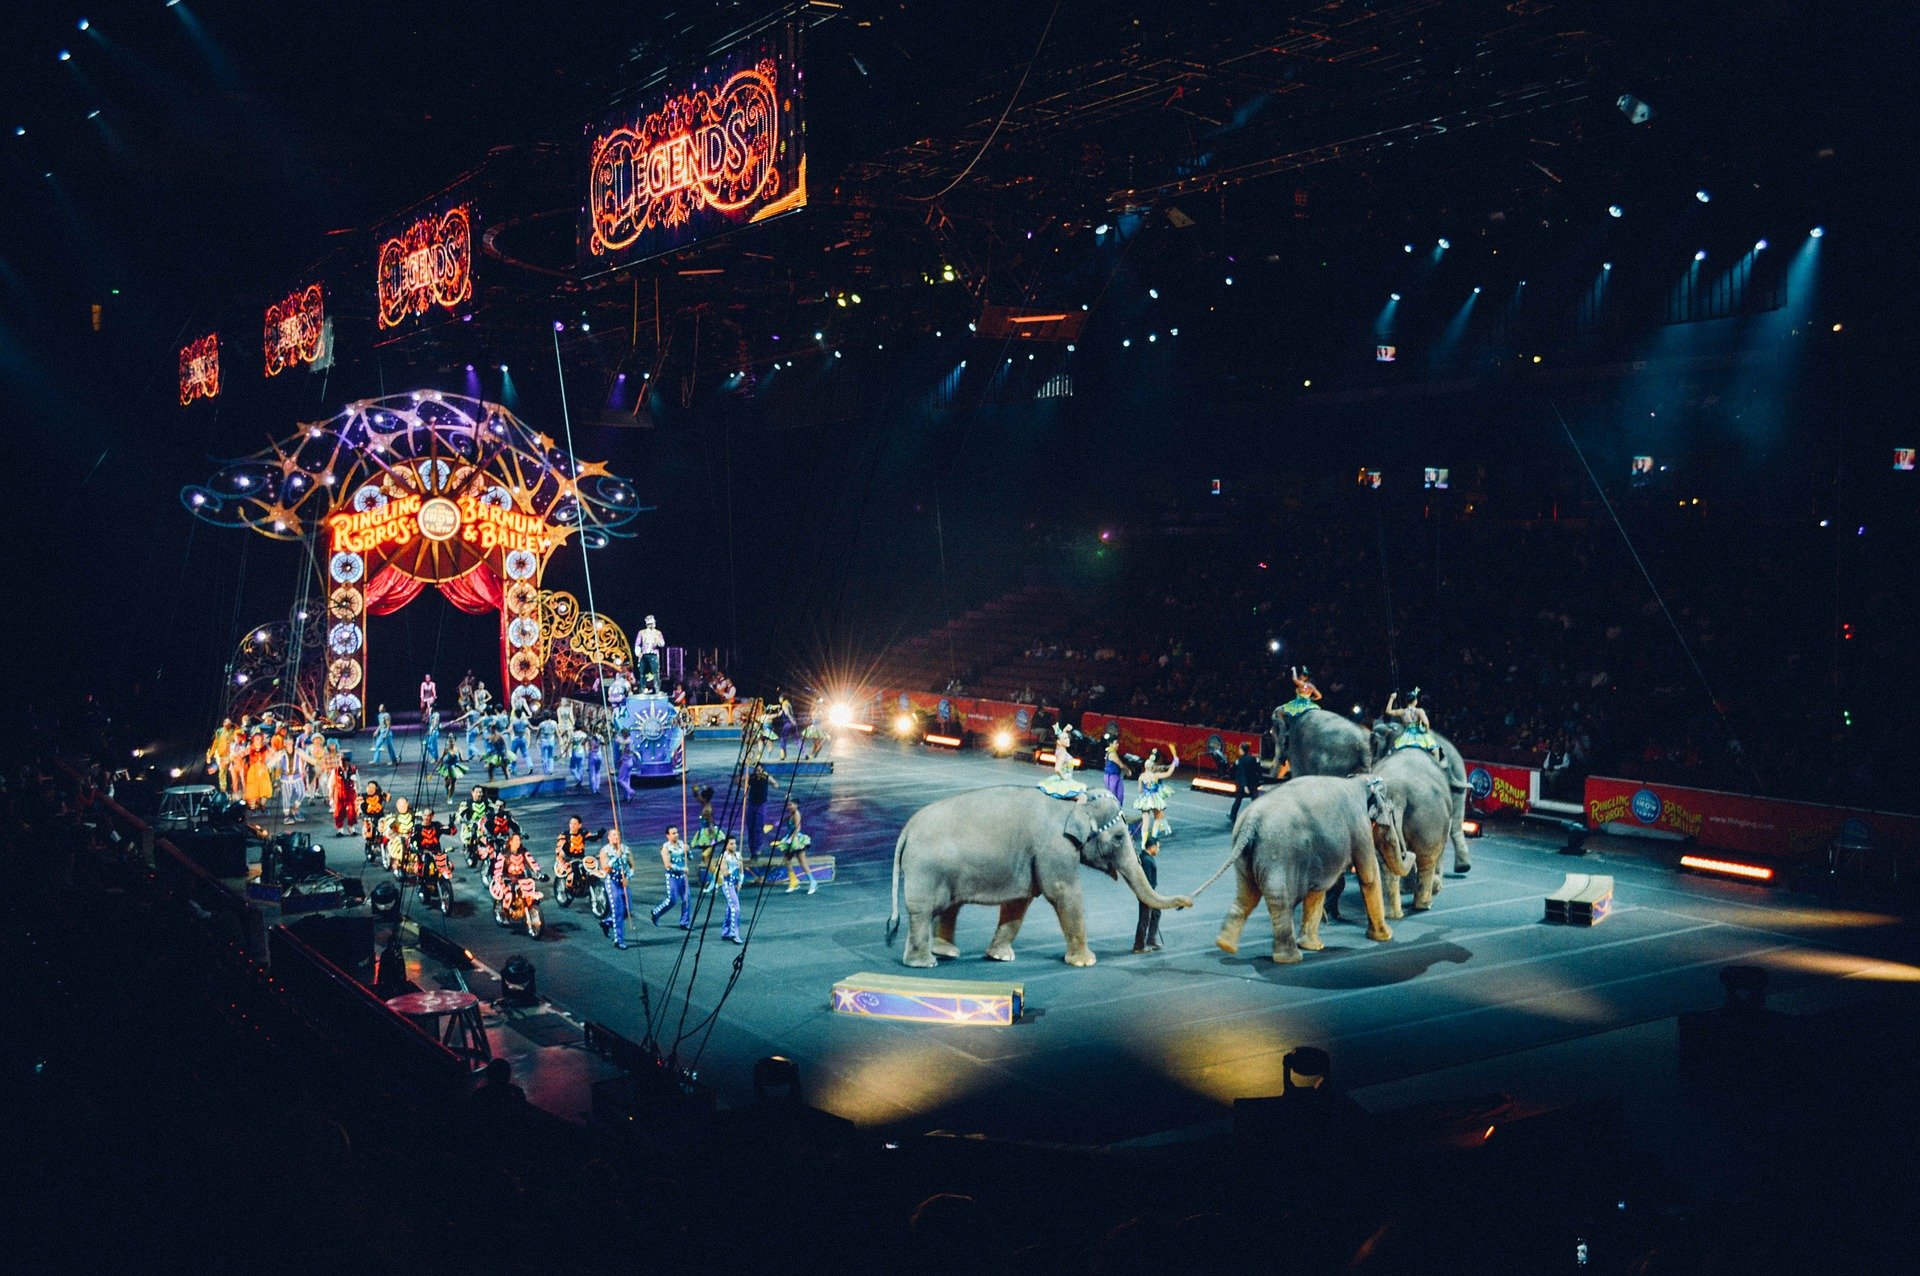 Apresentação de Circo no meio do picadeiro iluminado